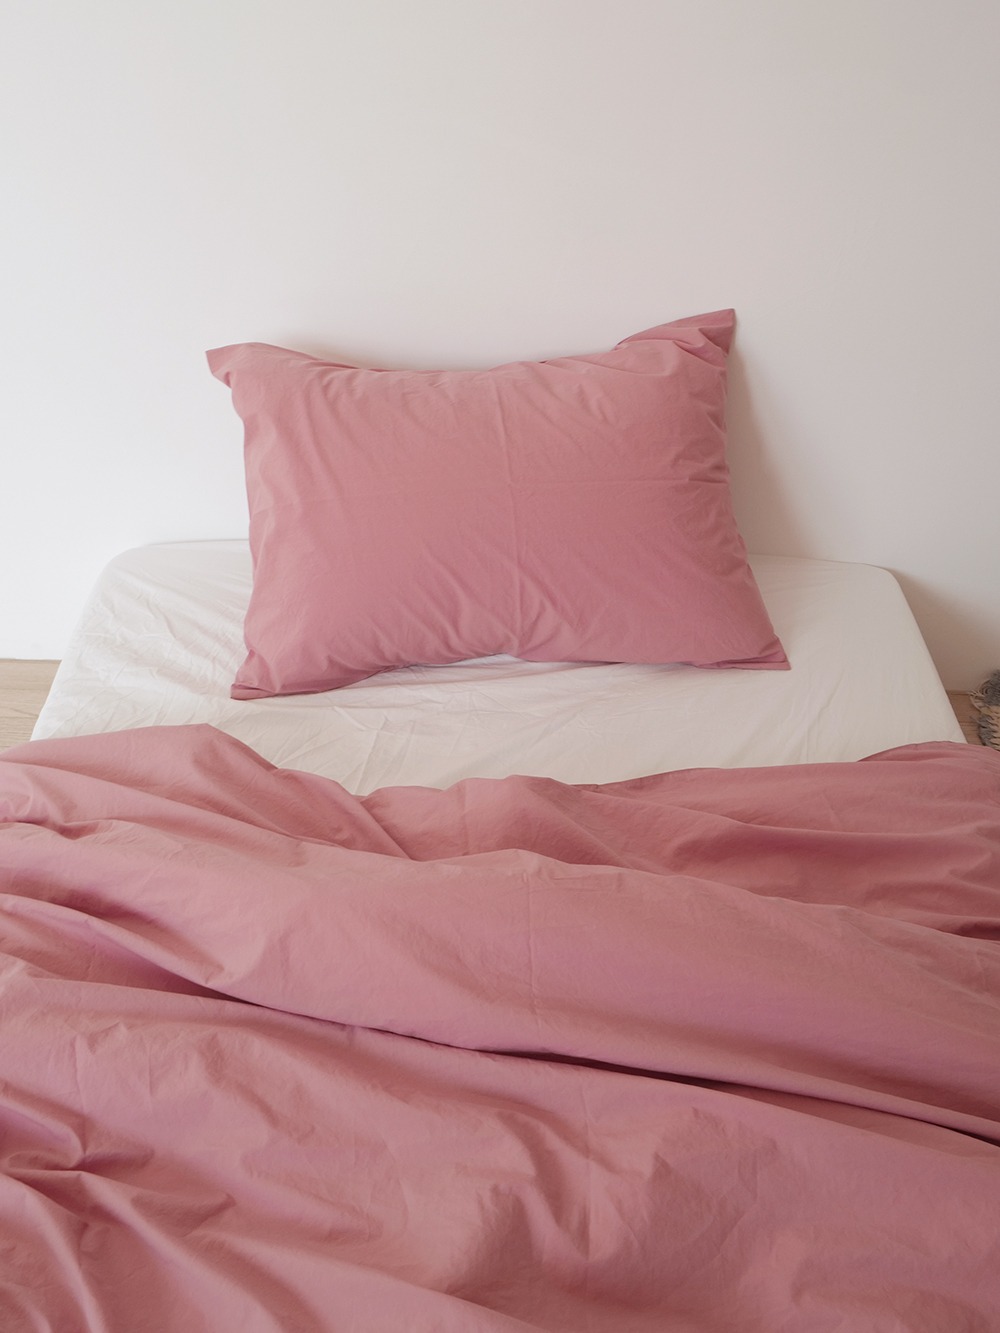 Rose Pink bedding